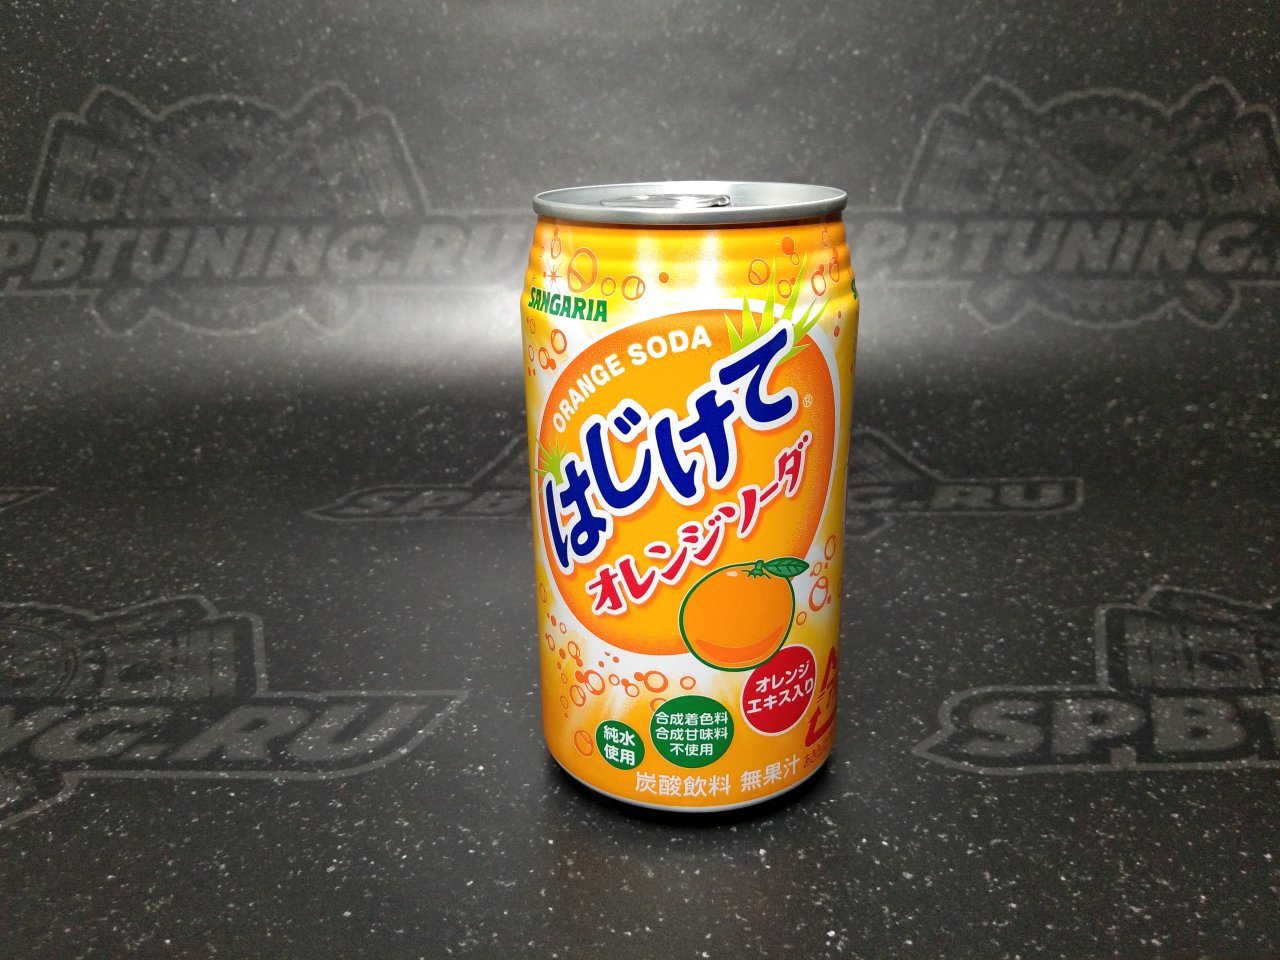 SANGARIA Напиток б/а газированный "ORANGE", со вкусом апельсина 350 мл.